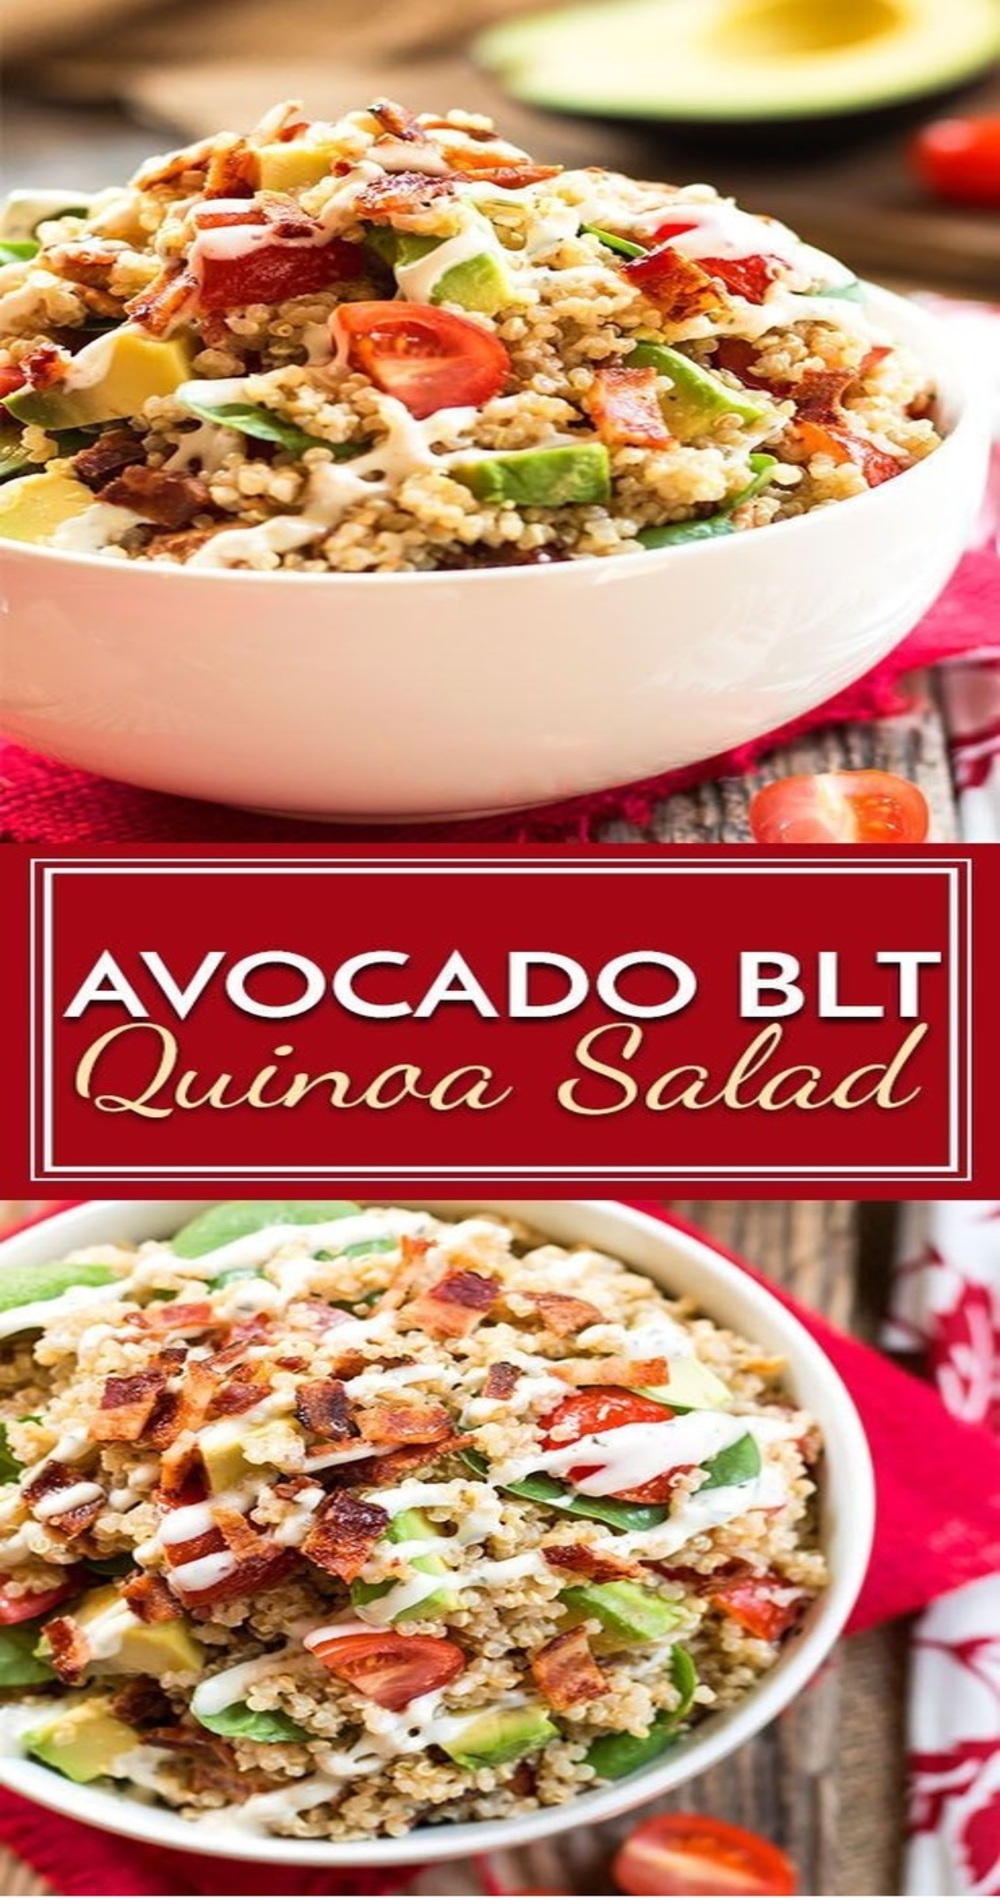 Avocado BLT Quinoa Salad